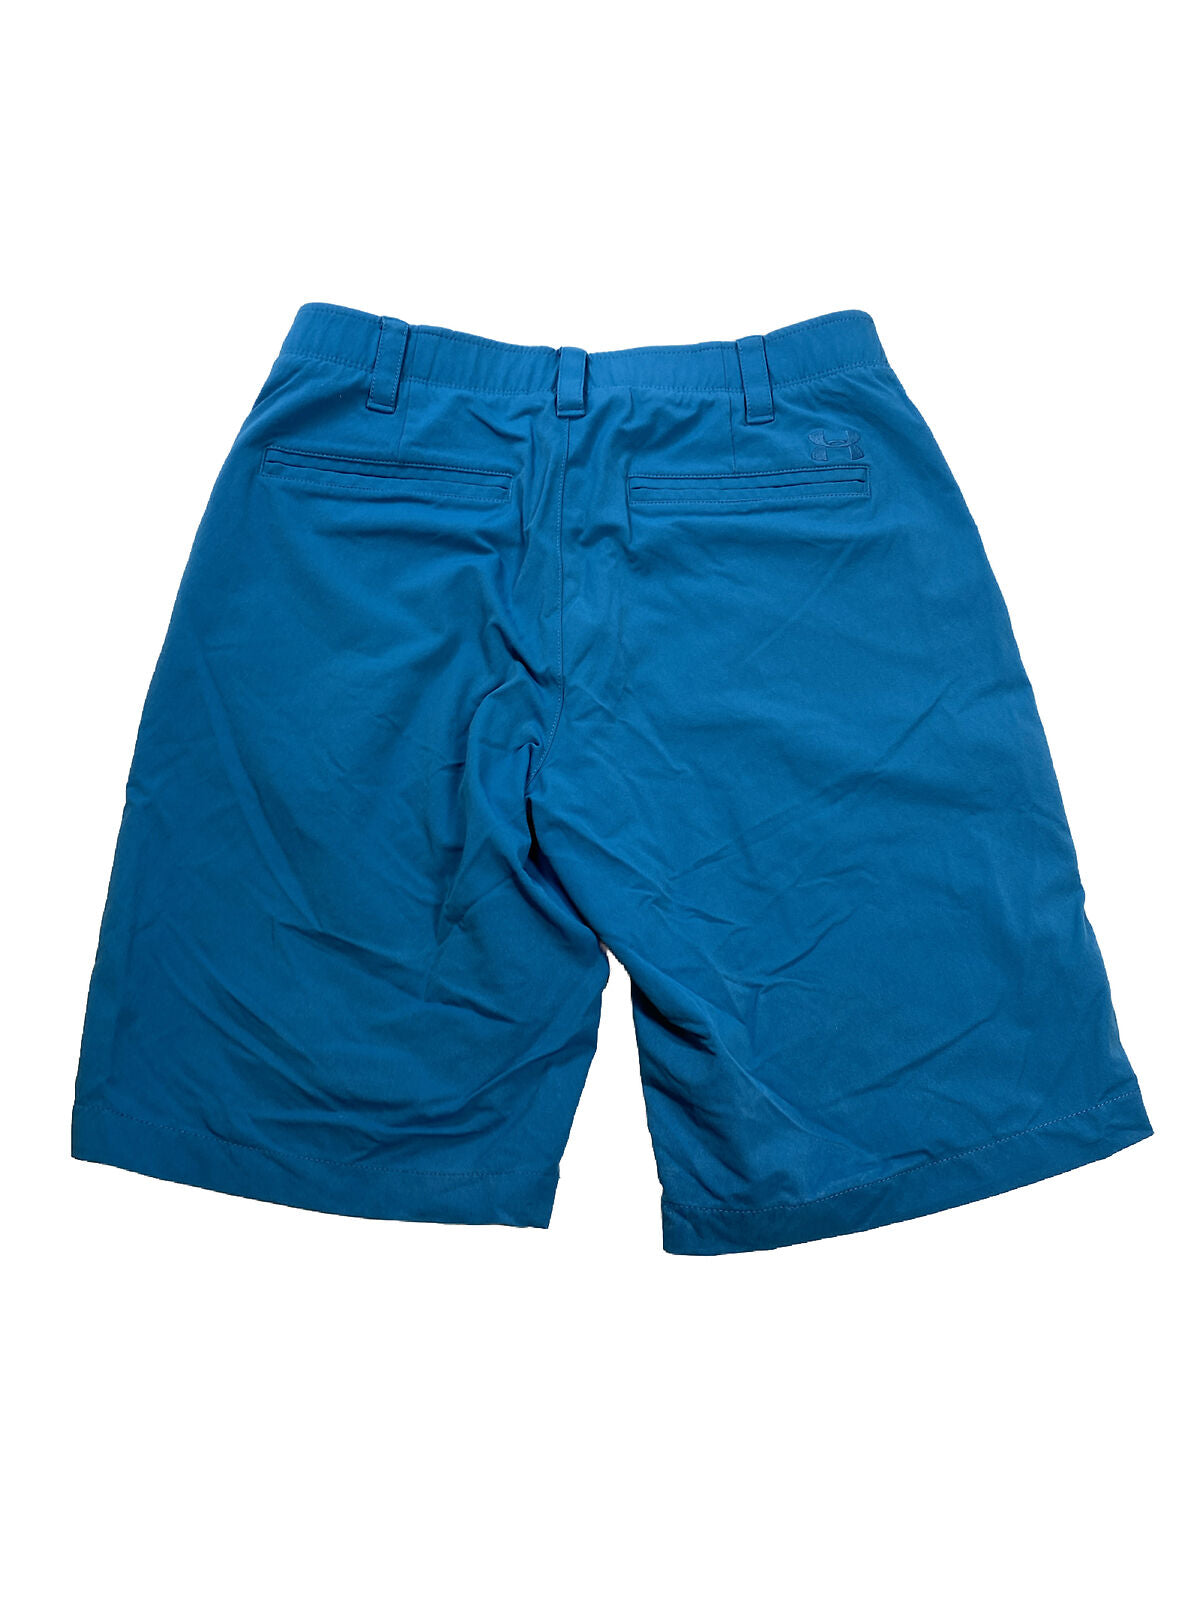 Under Armour Men's Blue HeatGear Tech Golf Chino Shorts - 32